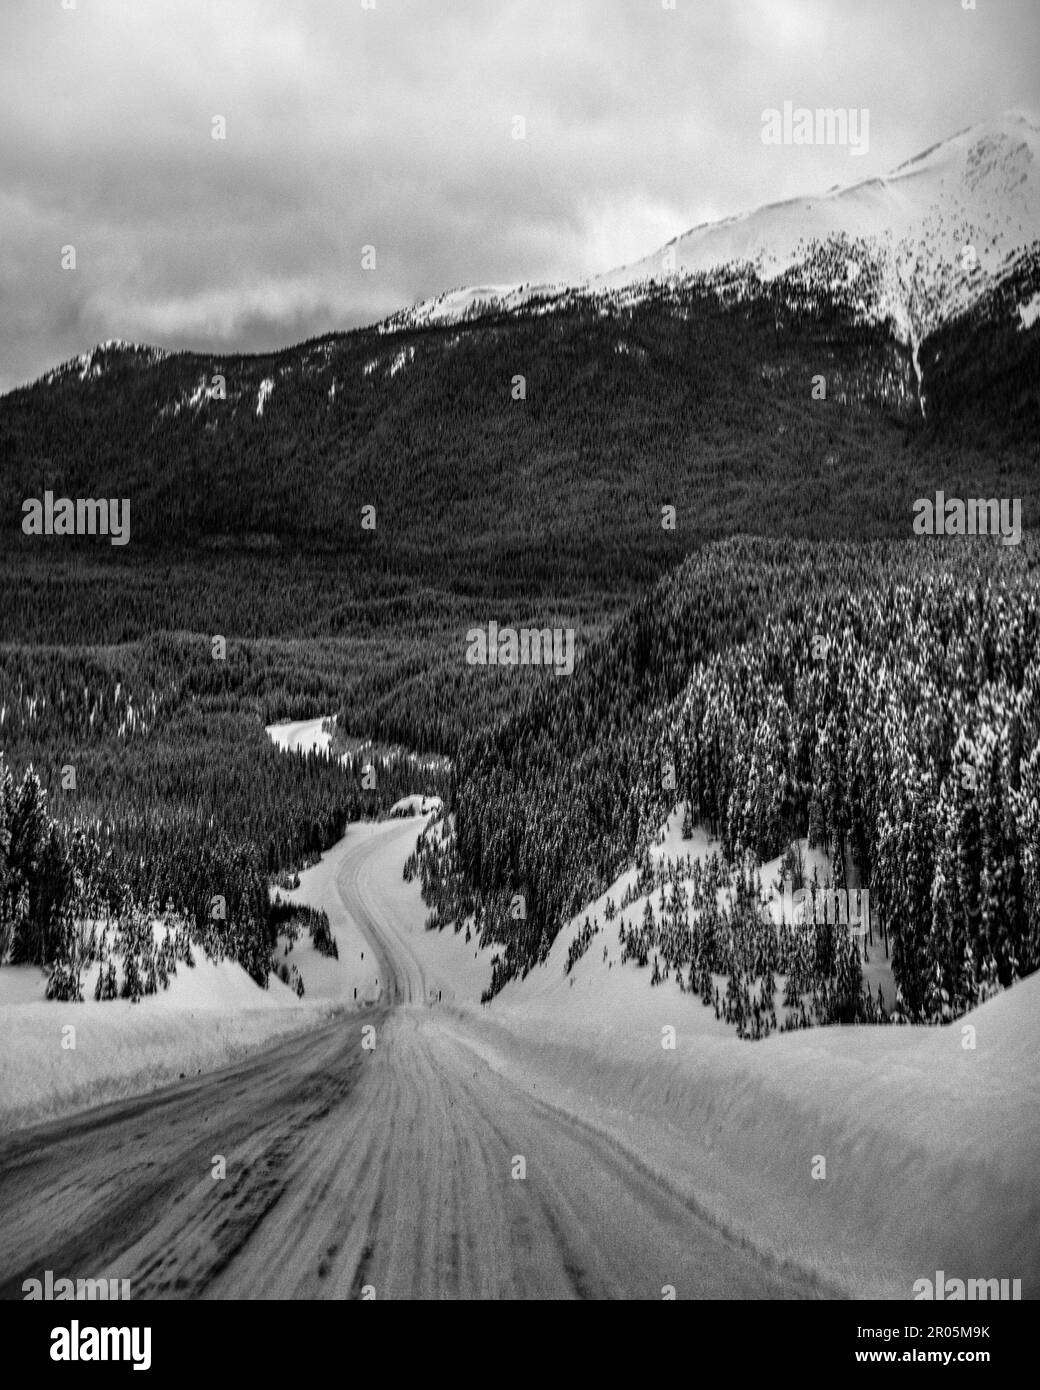 Vue portrait en noir et blanc le long de la route de l'Alaska en hiver avec des montagnes enneigées et des routes menant à un paysage enneigé parfait. Banque D'Images